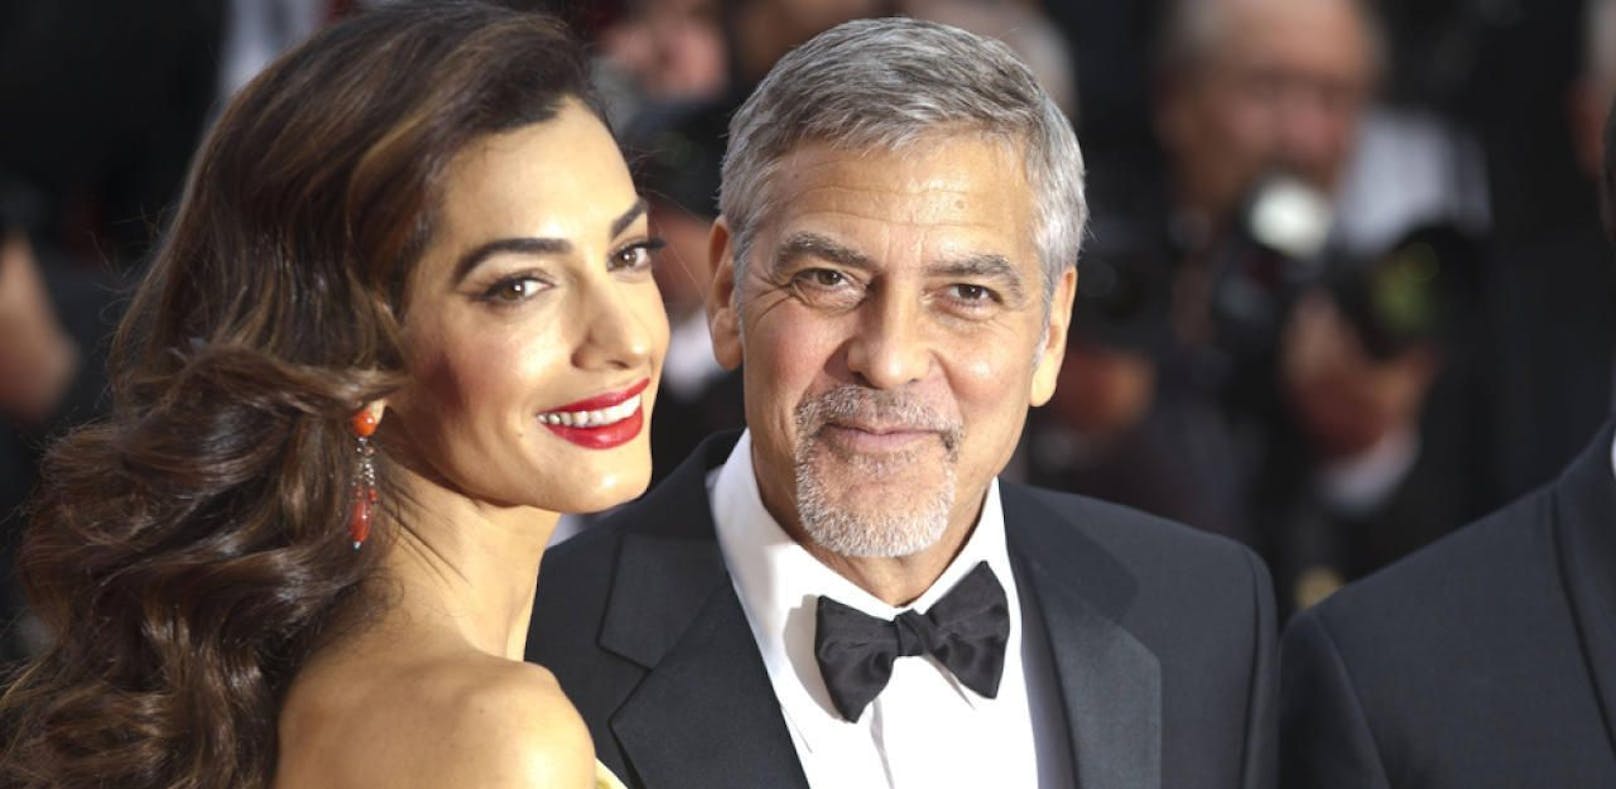 Clooneys bieten Hilfe für 3000 Flüchtlingskinder